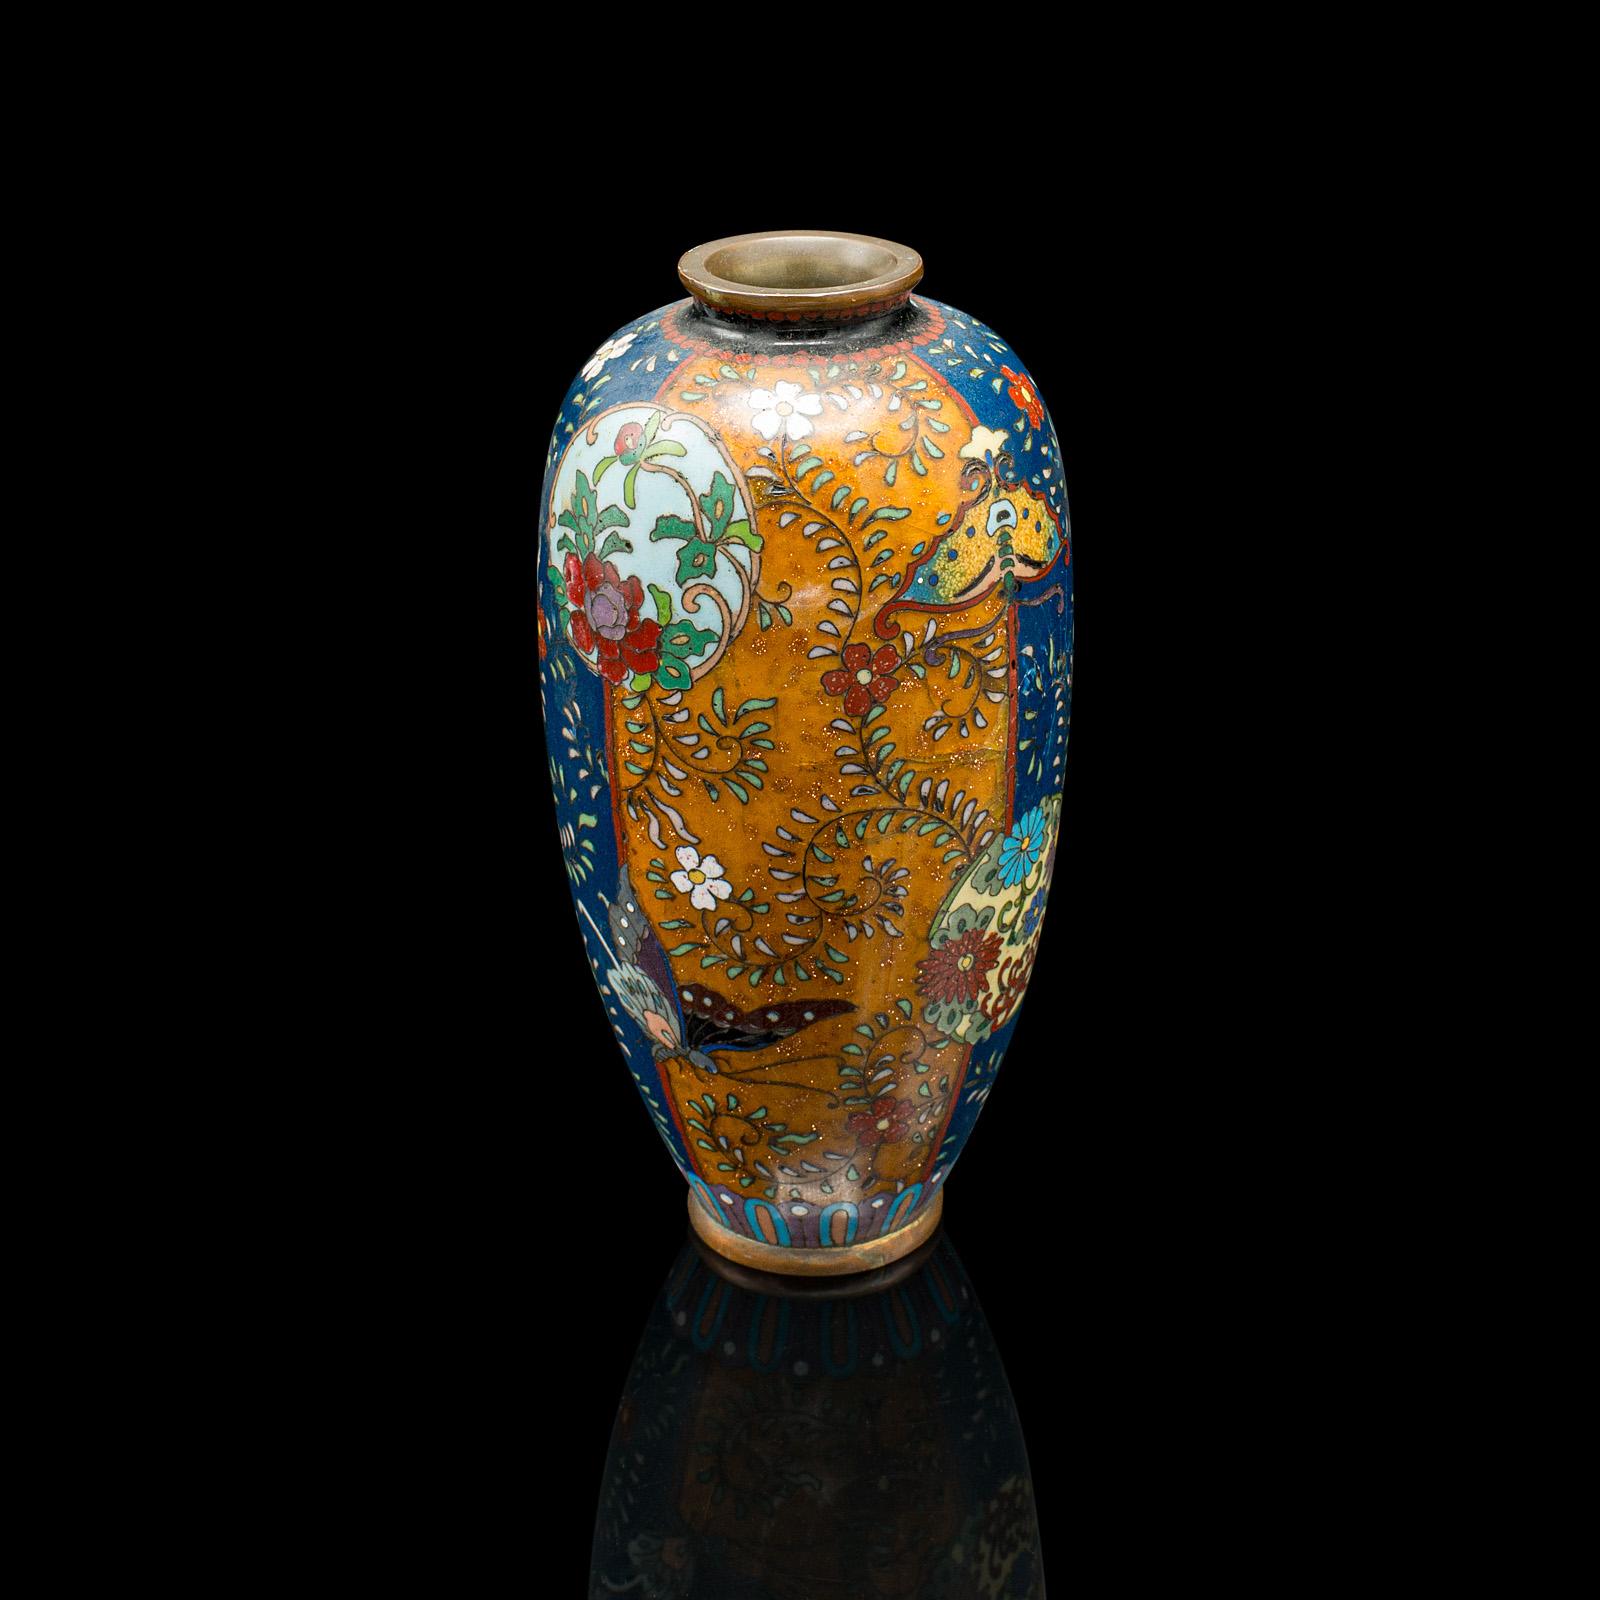 Il s'agit d'un petit vase antique Meiji. Urne balustre japonaise en cloisonné de Nagoya, datant de la fin de la période victorienne, vers 1900.

Charmant petit exemple de cloisonné de Nagoya
Présente une patine vieillie désirable dans l'état